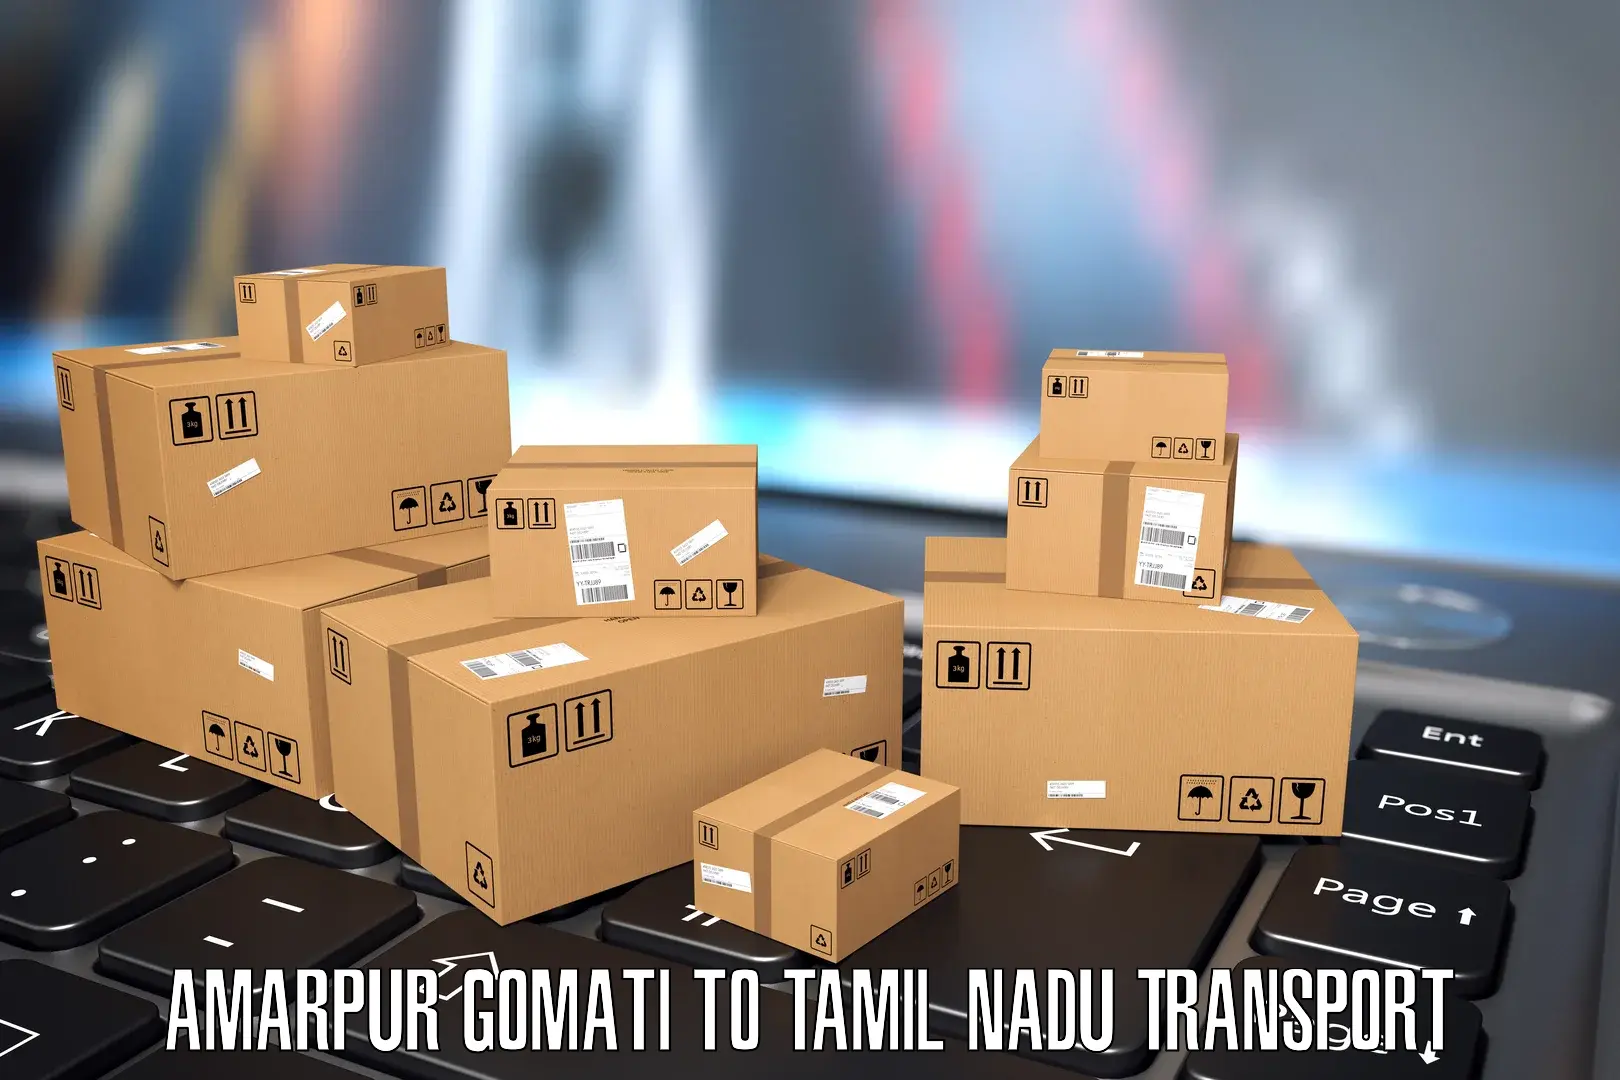 Road transport online services Amarpur Gomati to Parangimalai